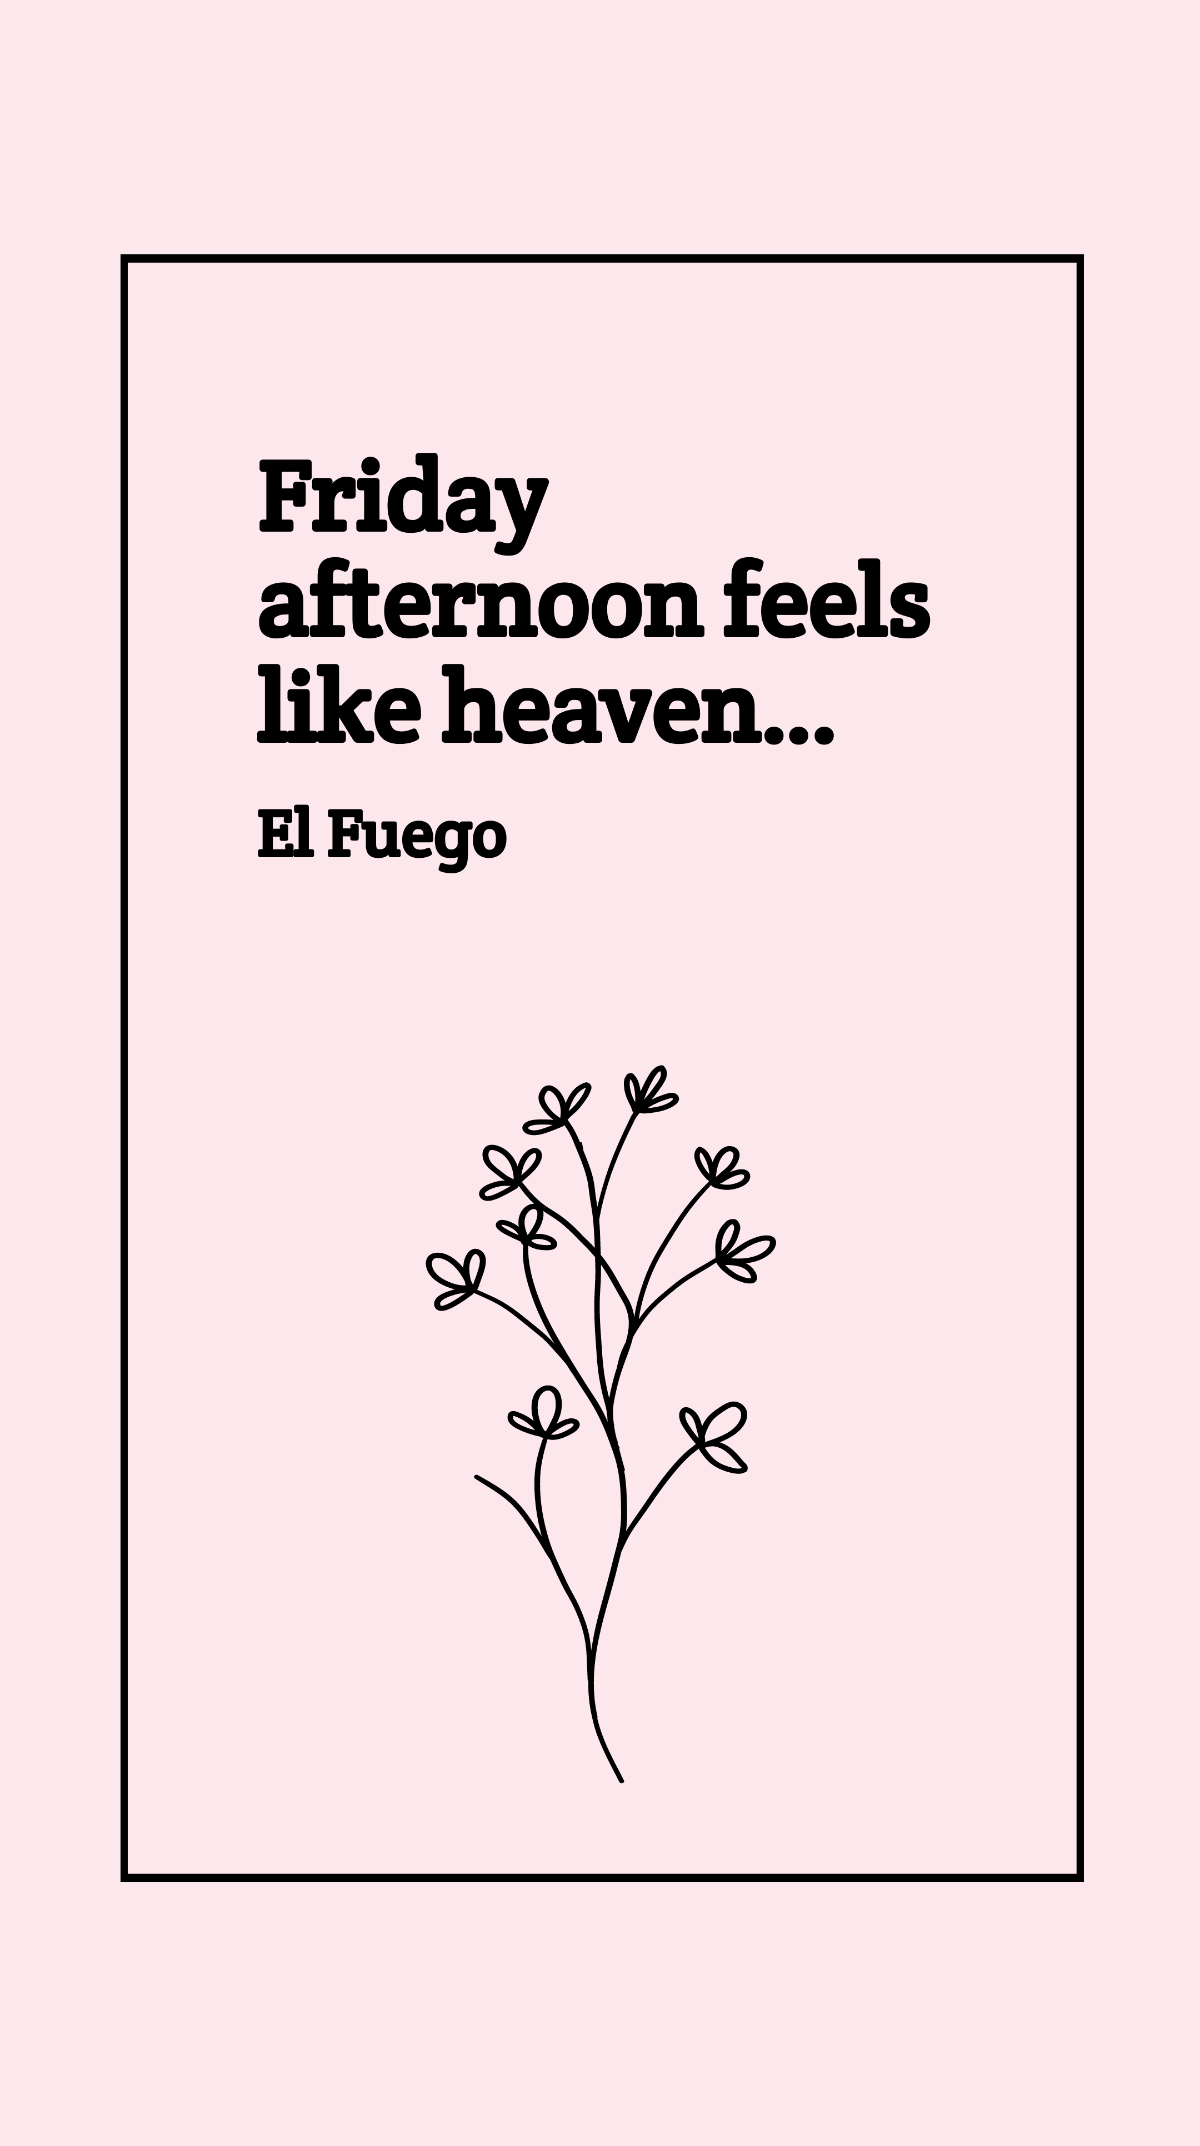 El Fuego - Friday afternoon feels like heaven…